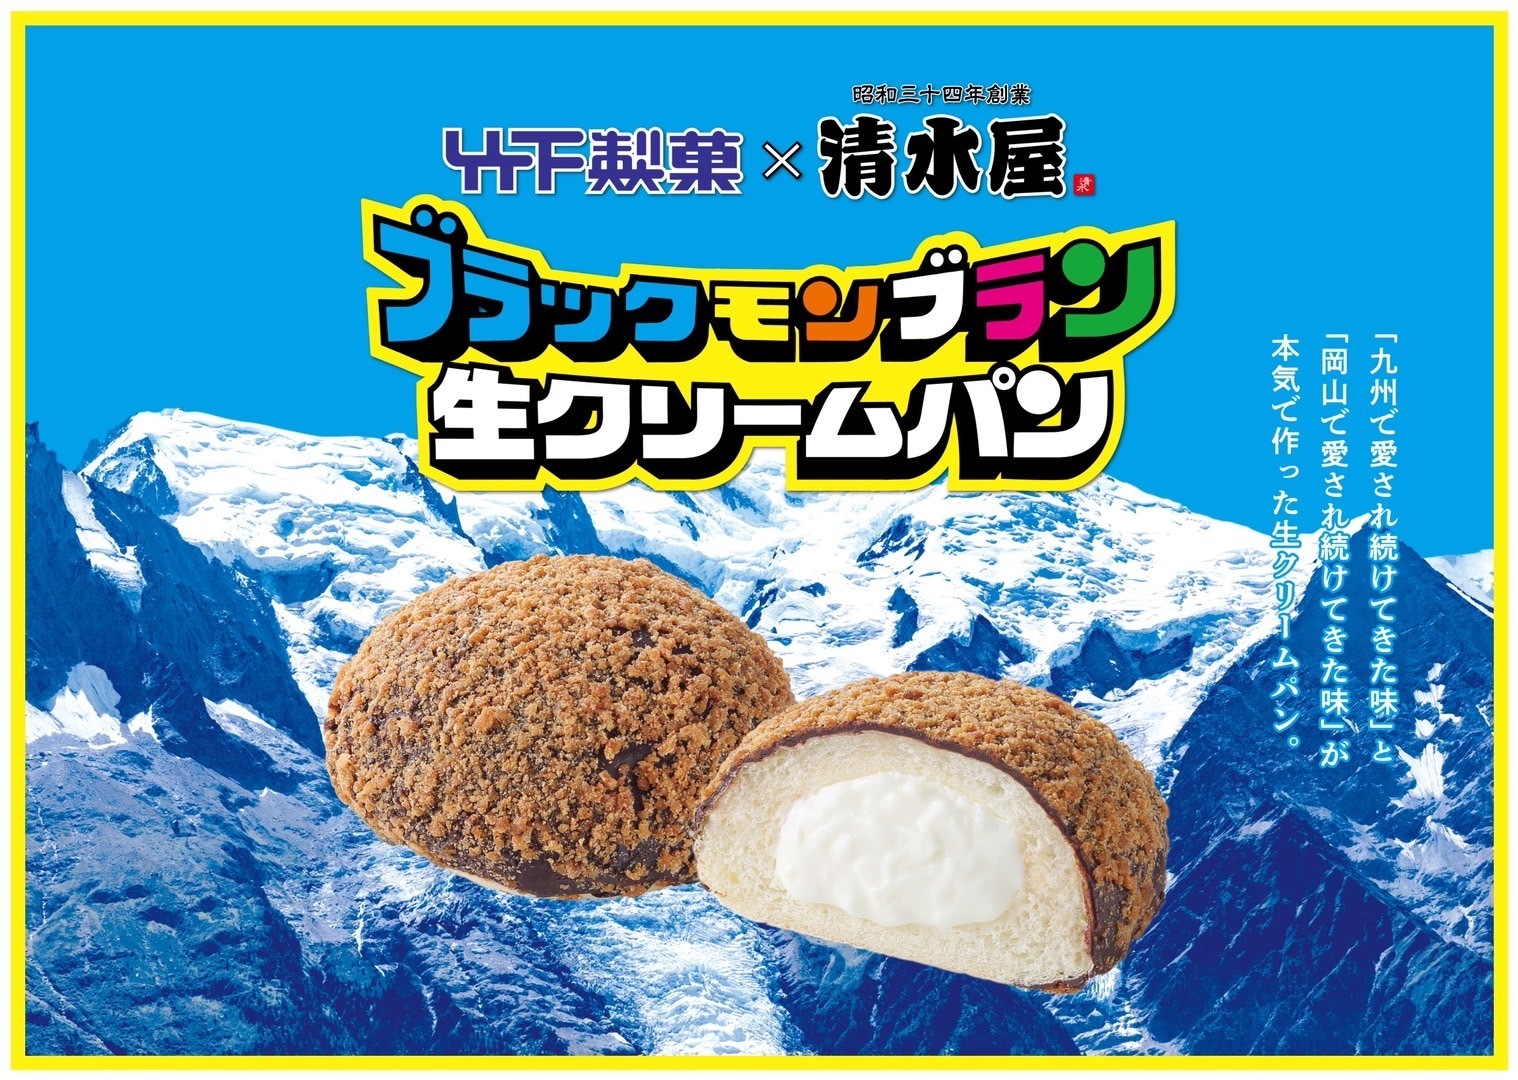 九州の「ブラックモンブラン」と岡山の「生クリームパン」の
魅力が融合したスイーツパンが11月1日より先行発売